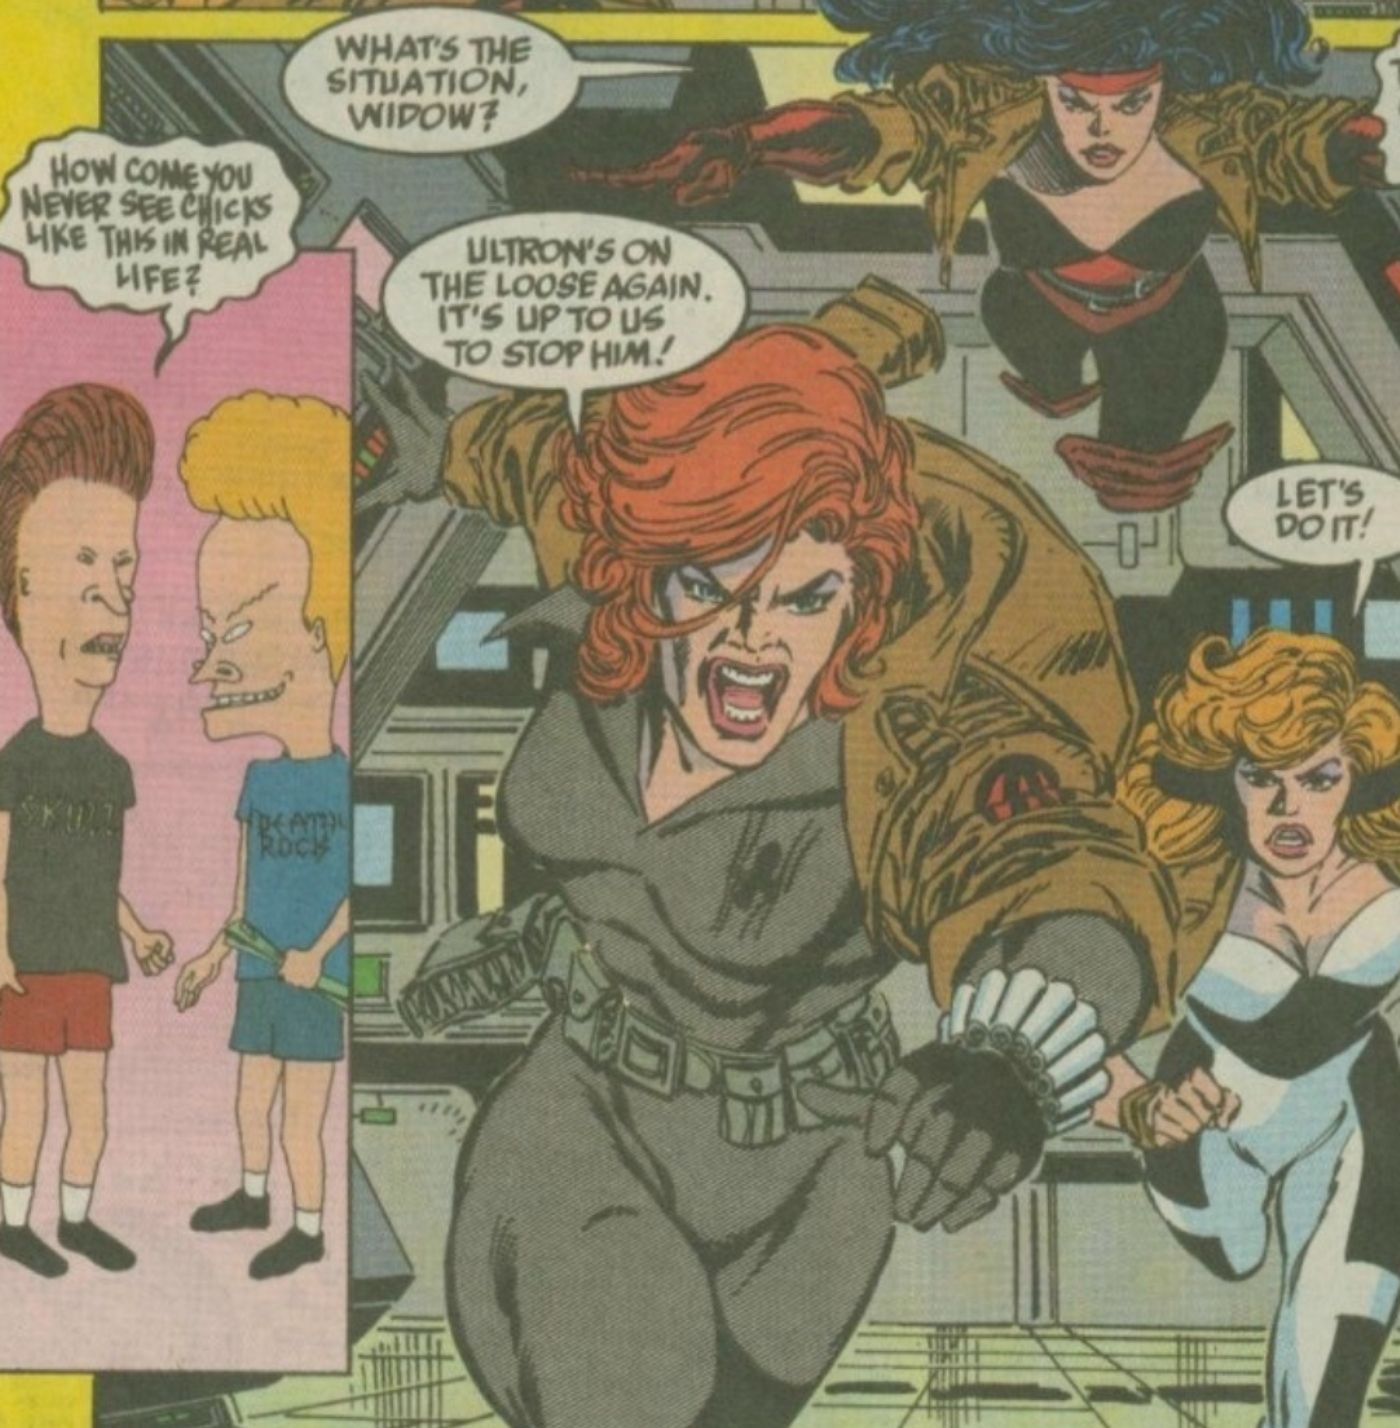 Beavis and Butt-Head reading a Black Widow comic.